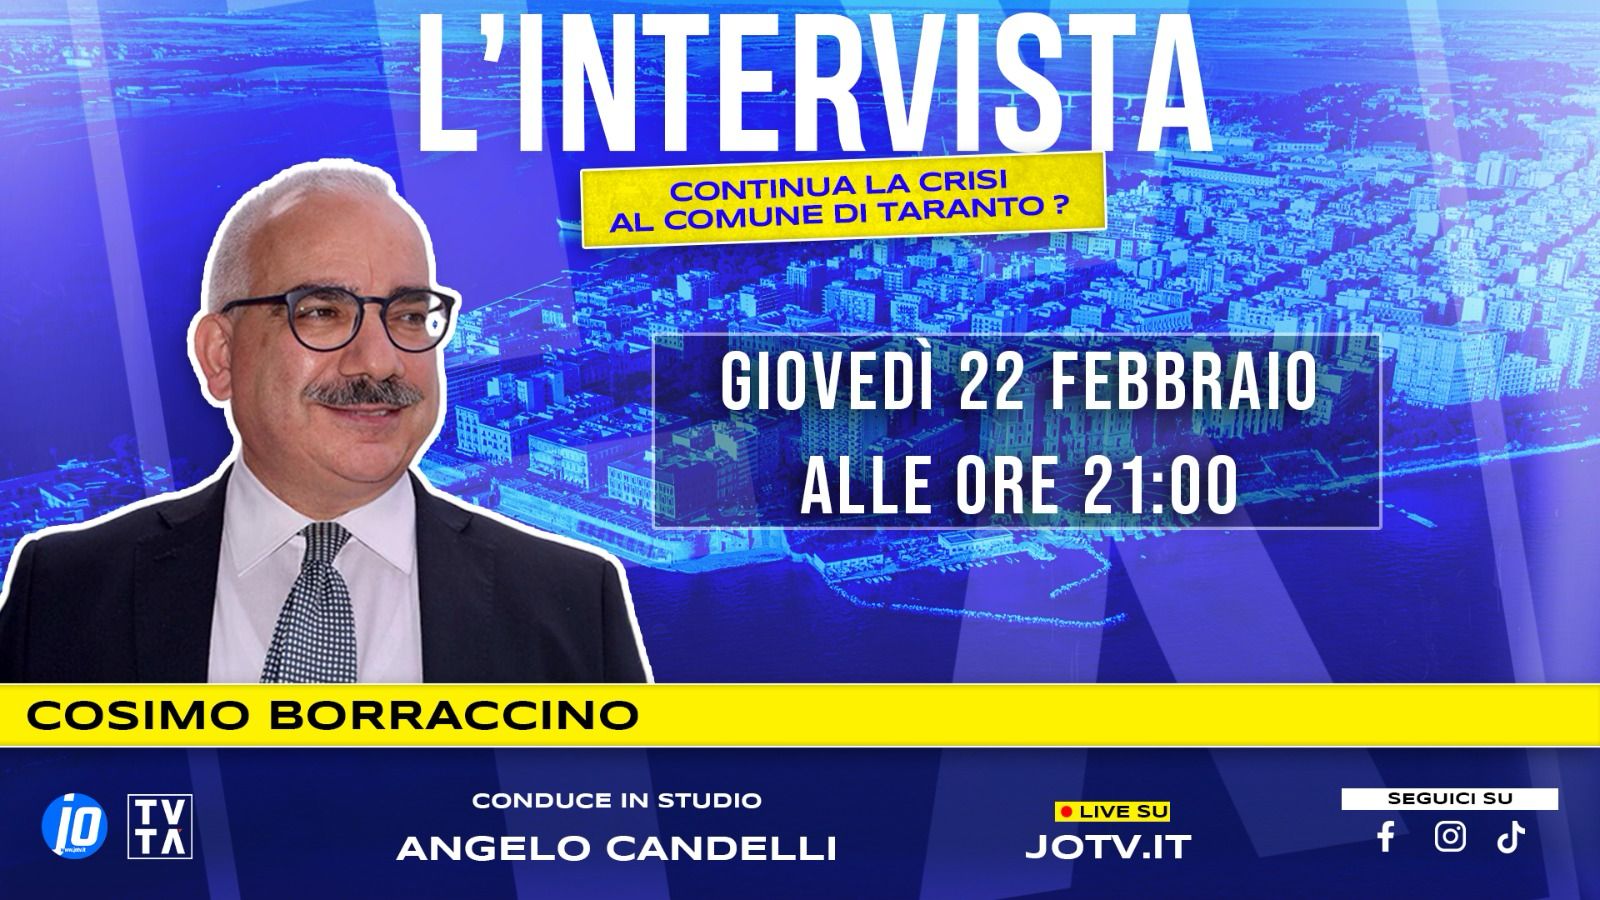 “Continua la crisi al Comune di Taranto?” Se ne parla stasera su JoTv con Cosimo Borraccino